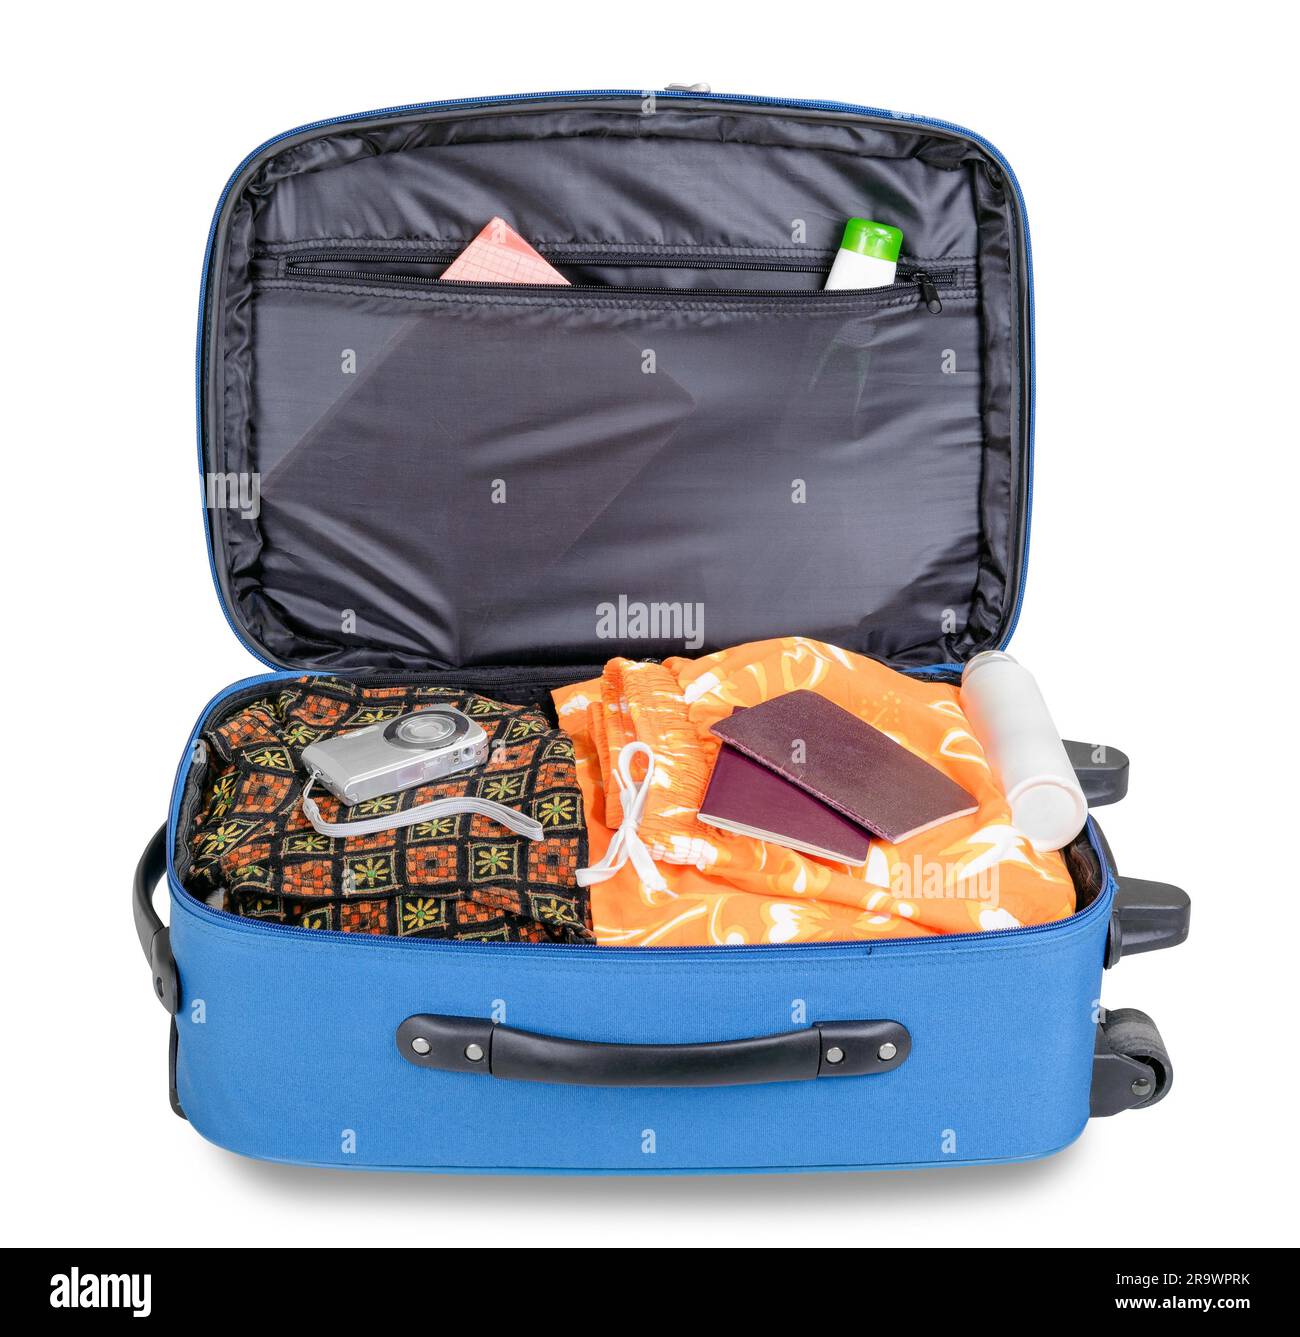 Valise bleu ouvert, prêt pour un voyage de vacances, avec l'appareil photo numérique et de passeports, isolé sur fond blanc Banque D'Images